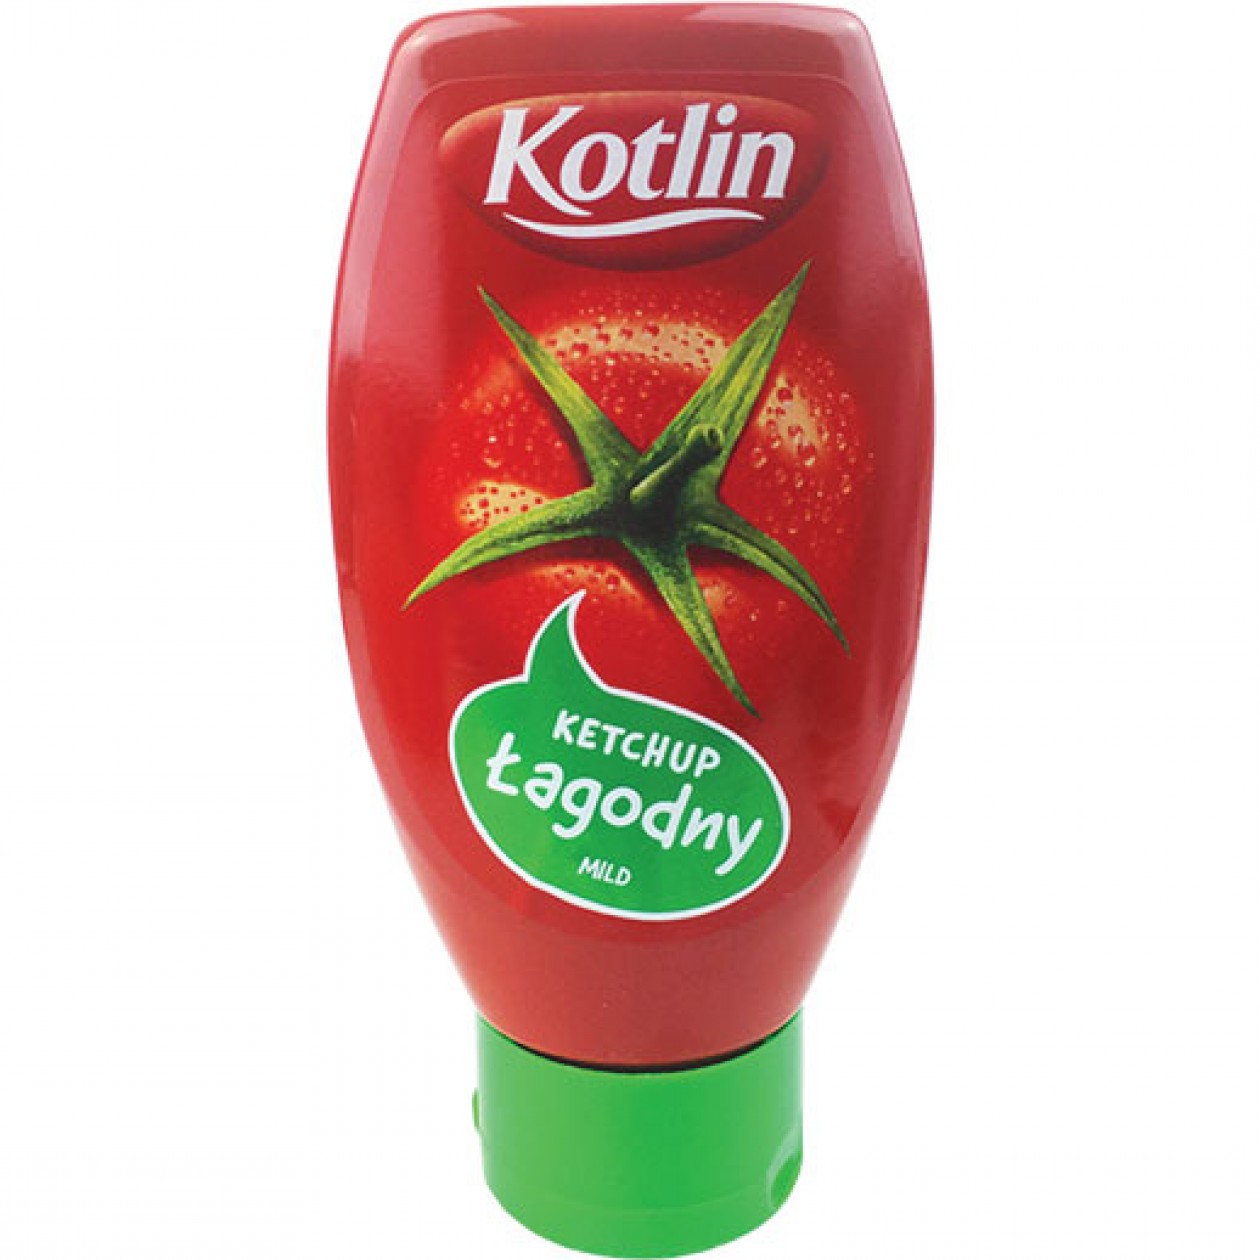 Kotlin Ketchup Mild 10x450g